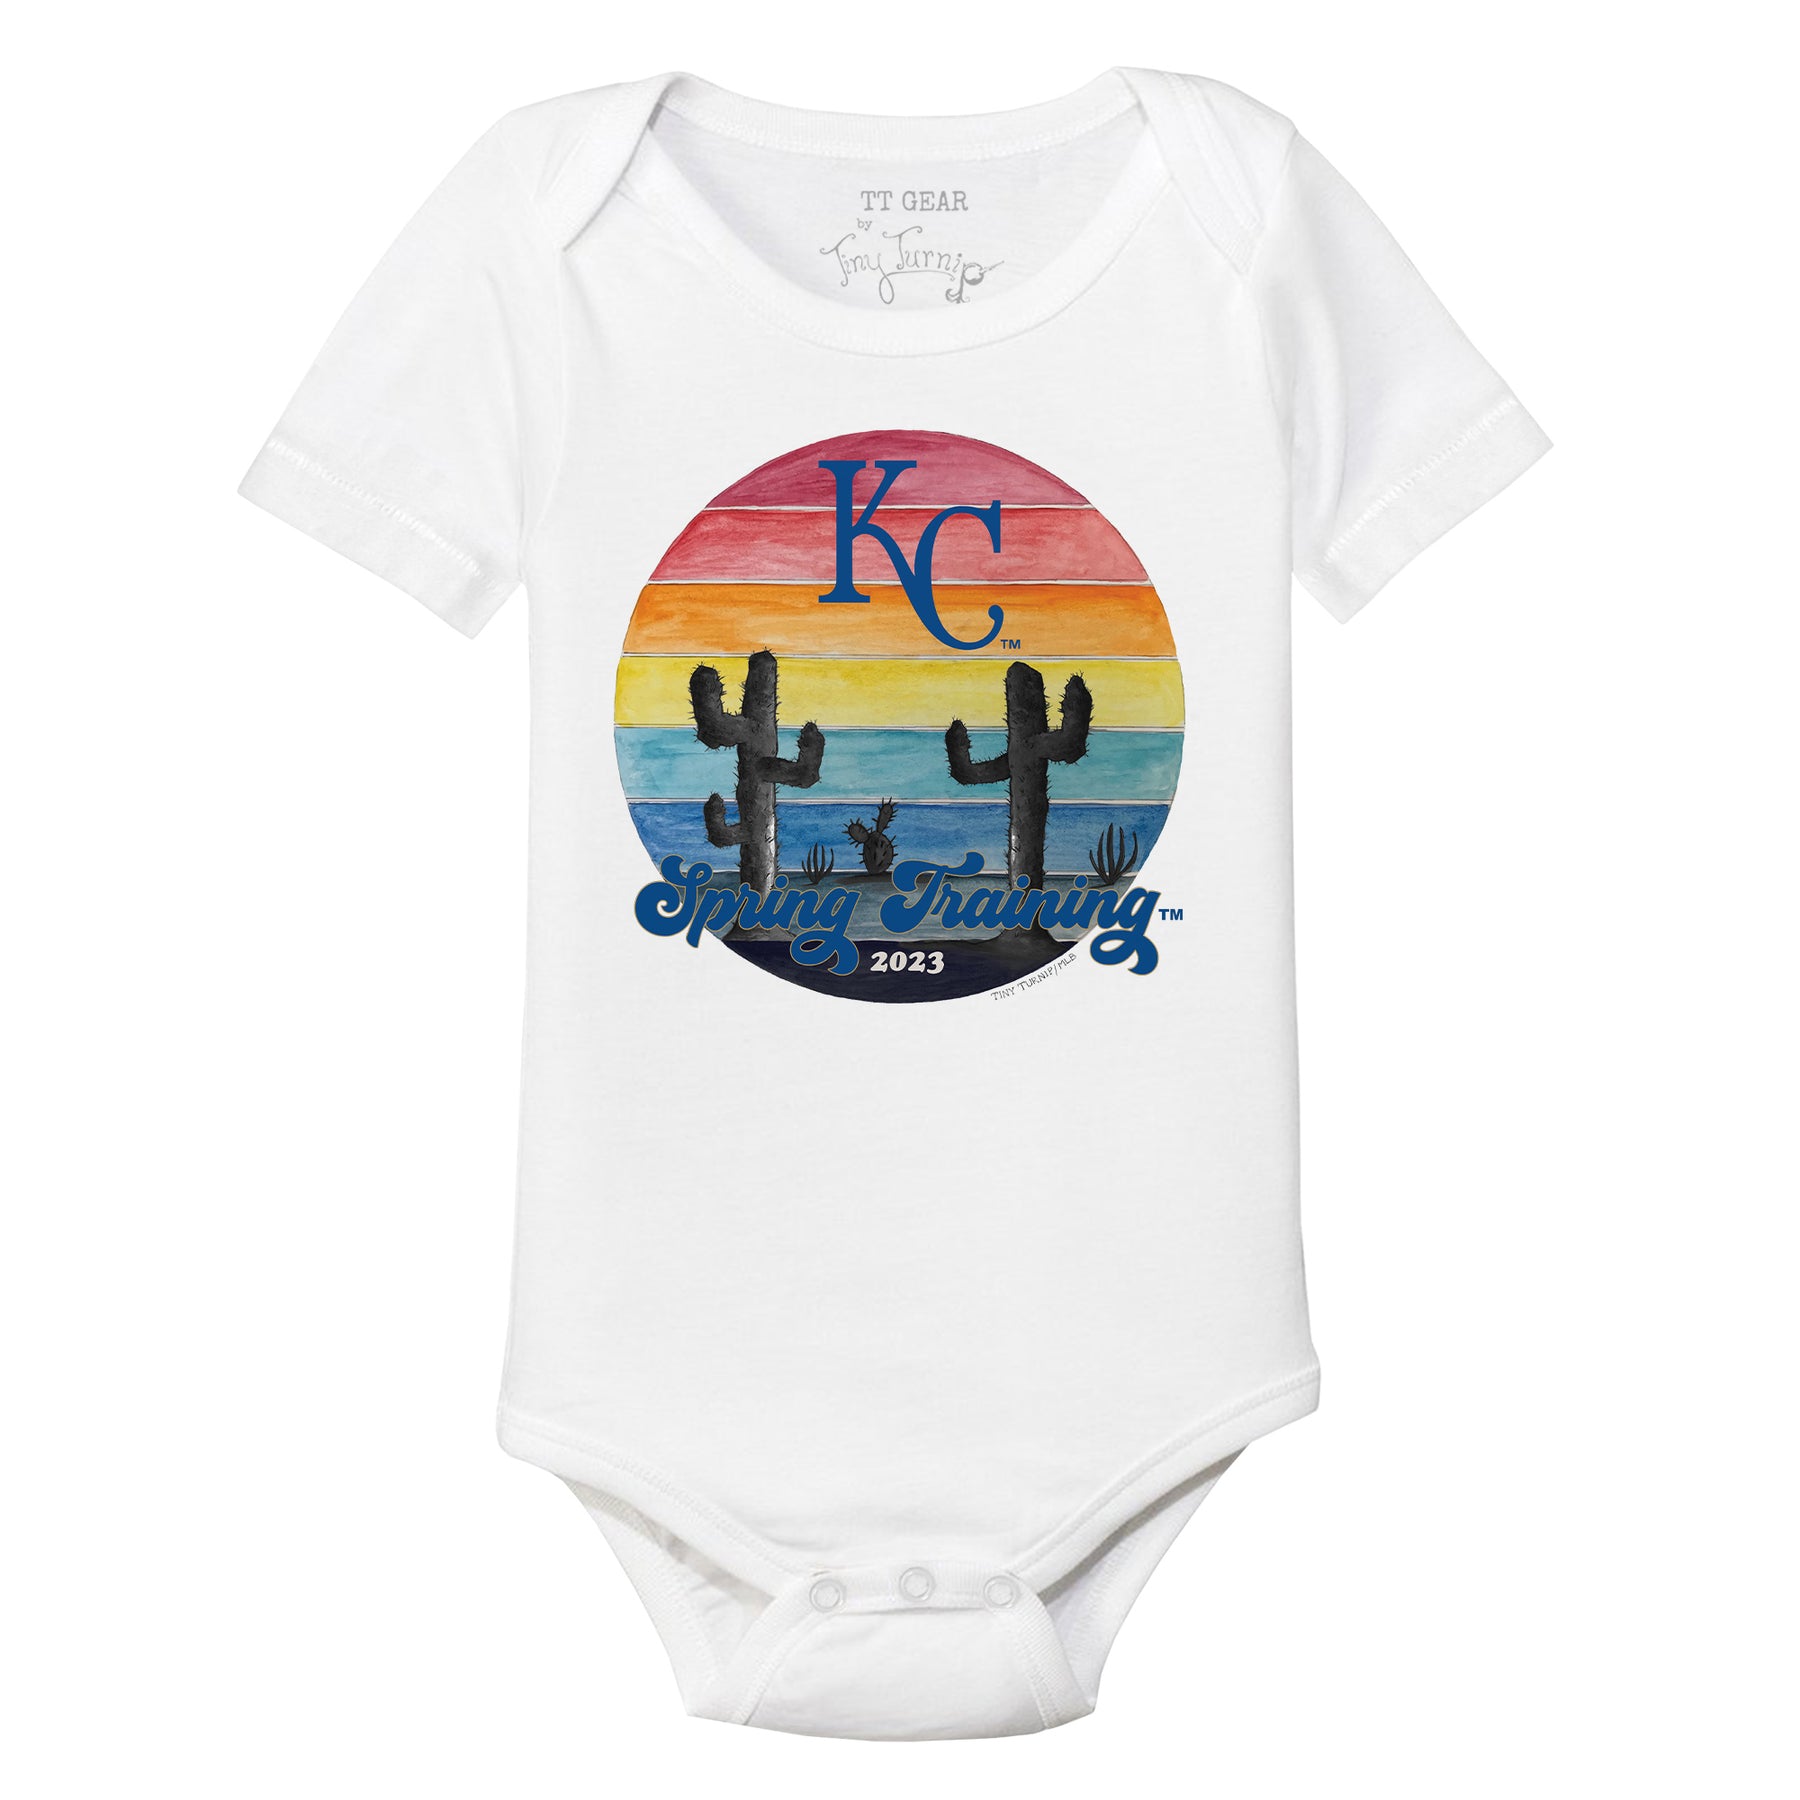 Kansas City Royals Apparel, Royals Jersey, Royals Clothing and Gear